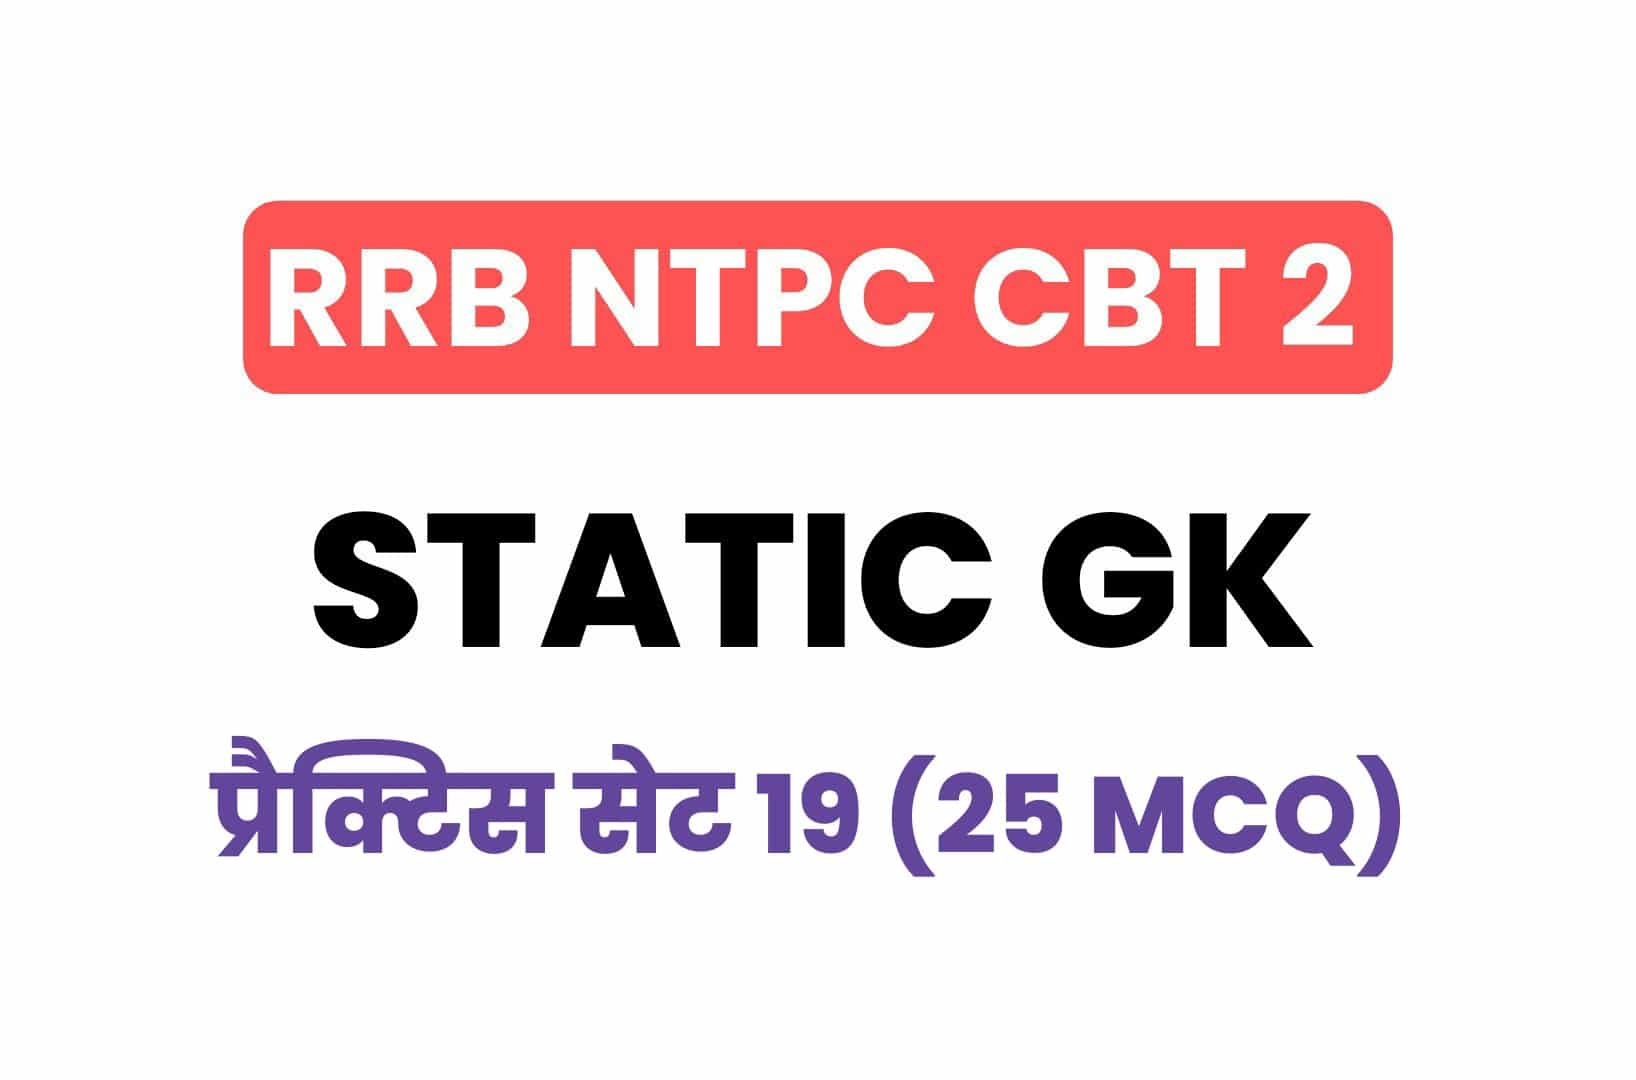 RRB NTPC CBT 2 Static GK प्रैक्टिस सेट 19: परीक्षा में पूछें गये महत्वपूर्ण प्रश्नों का संग्रह, जरूर देखें